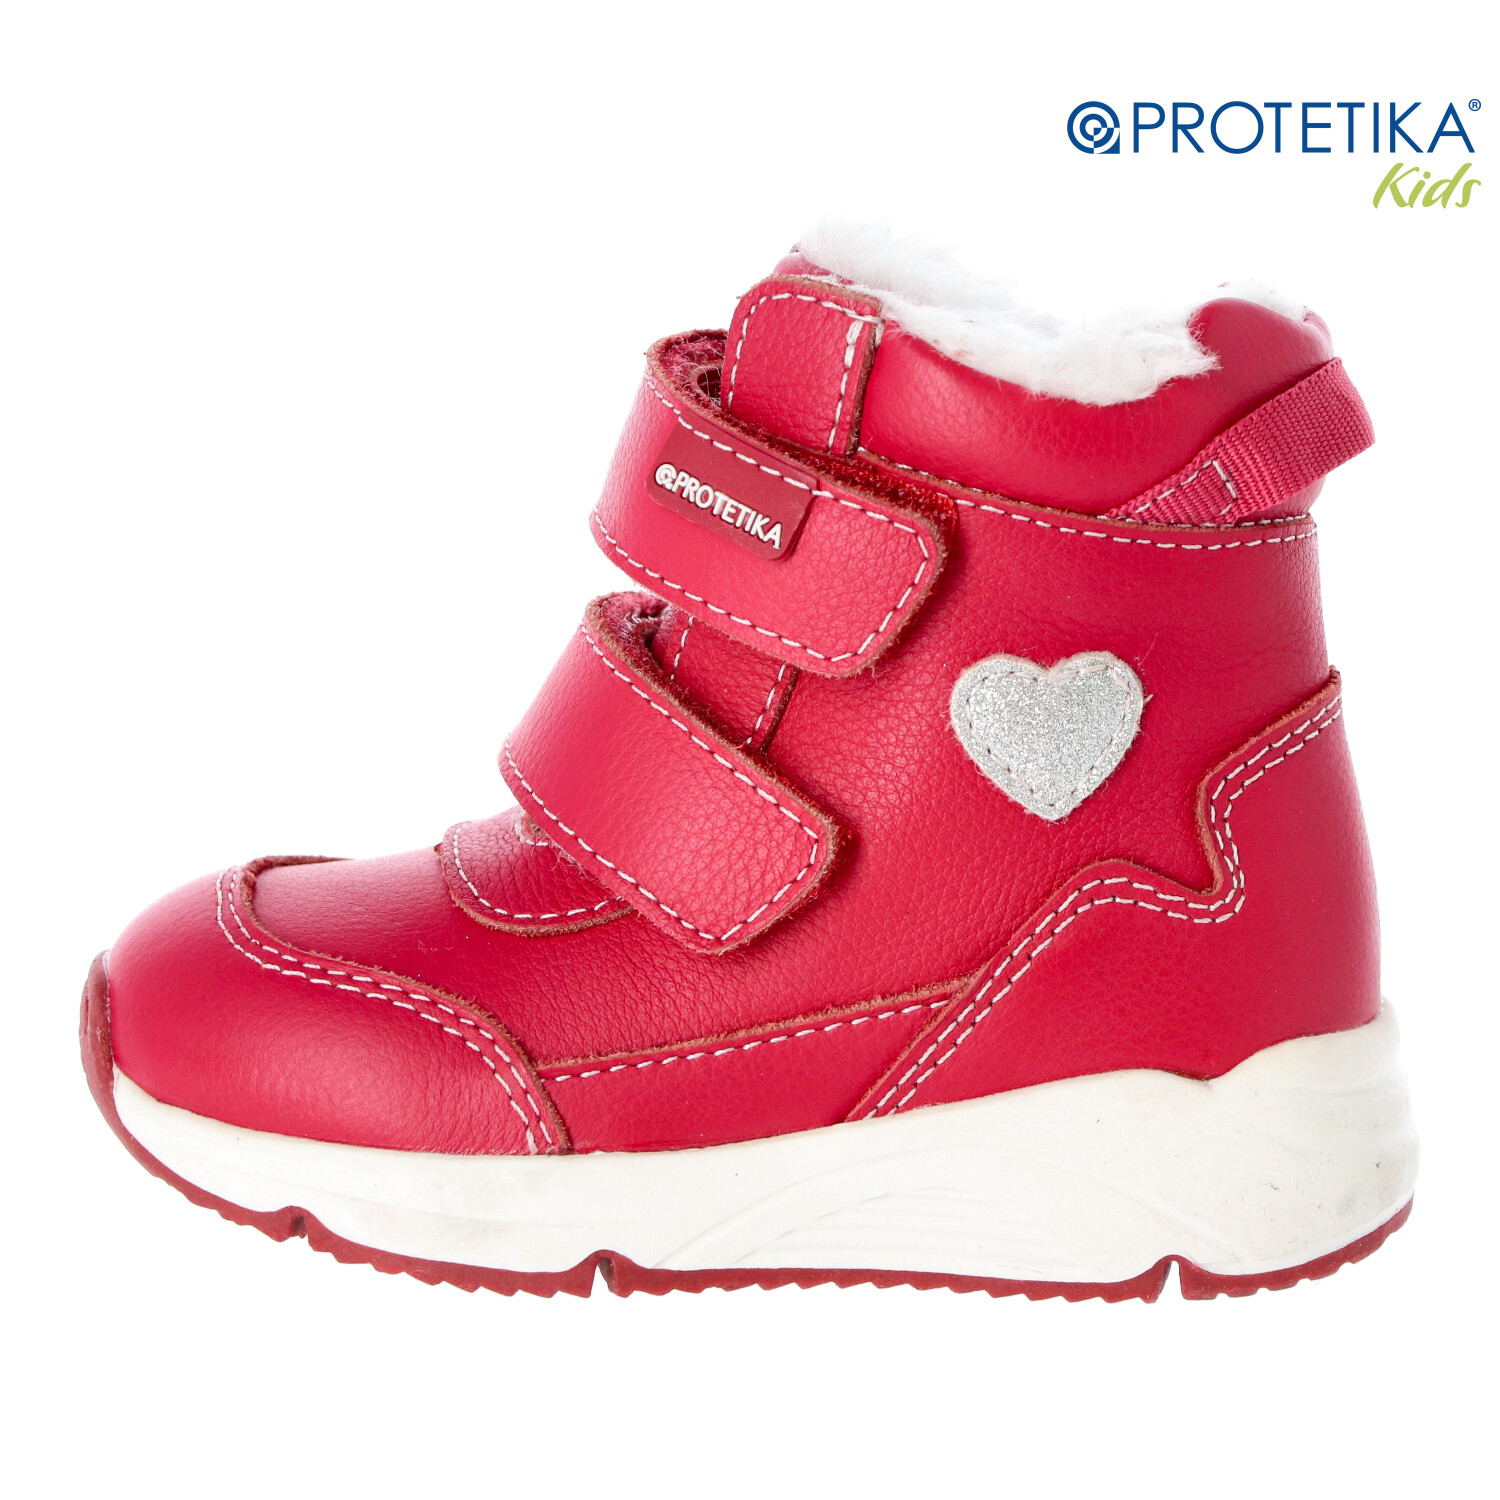 Protetika - zimné topánky s kožušinkou LARKA